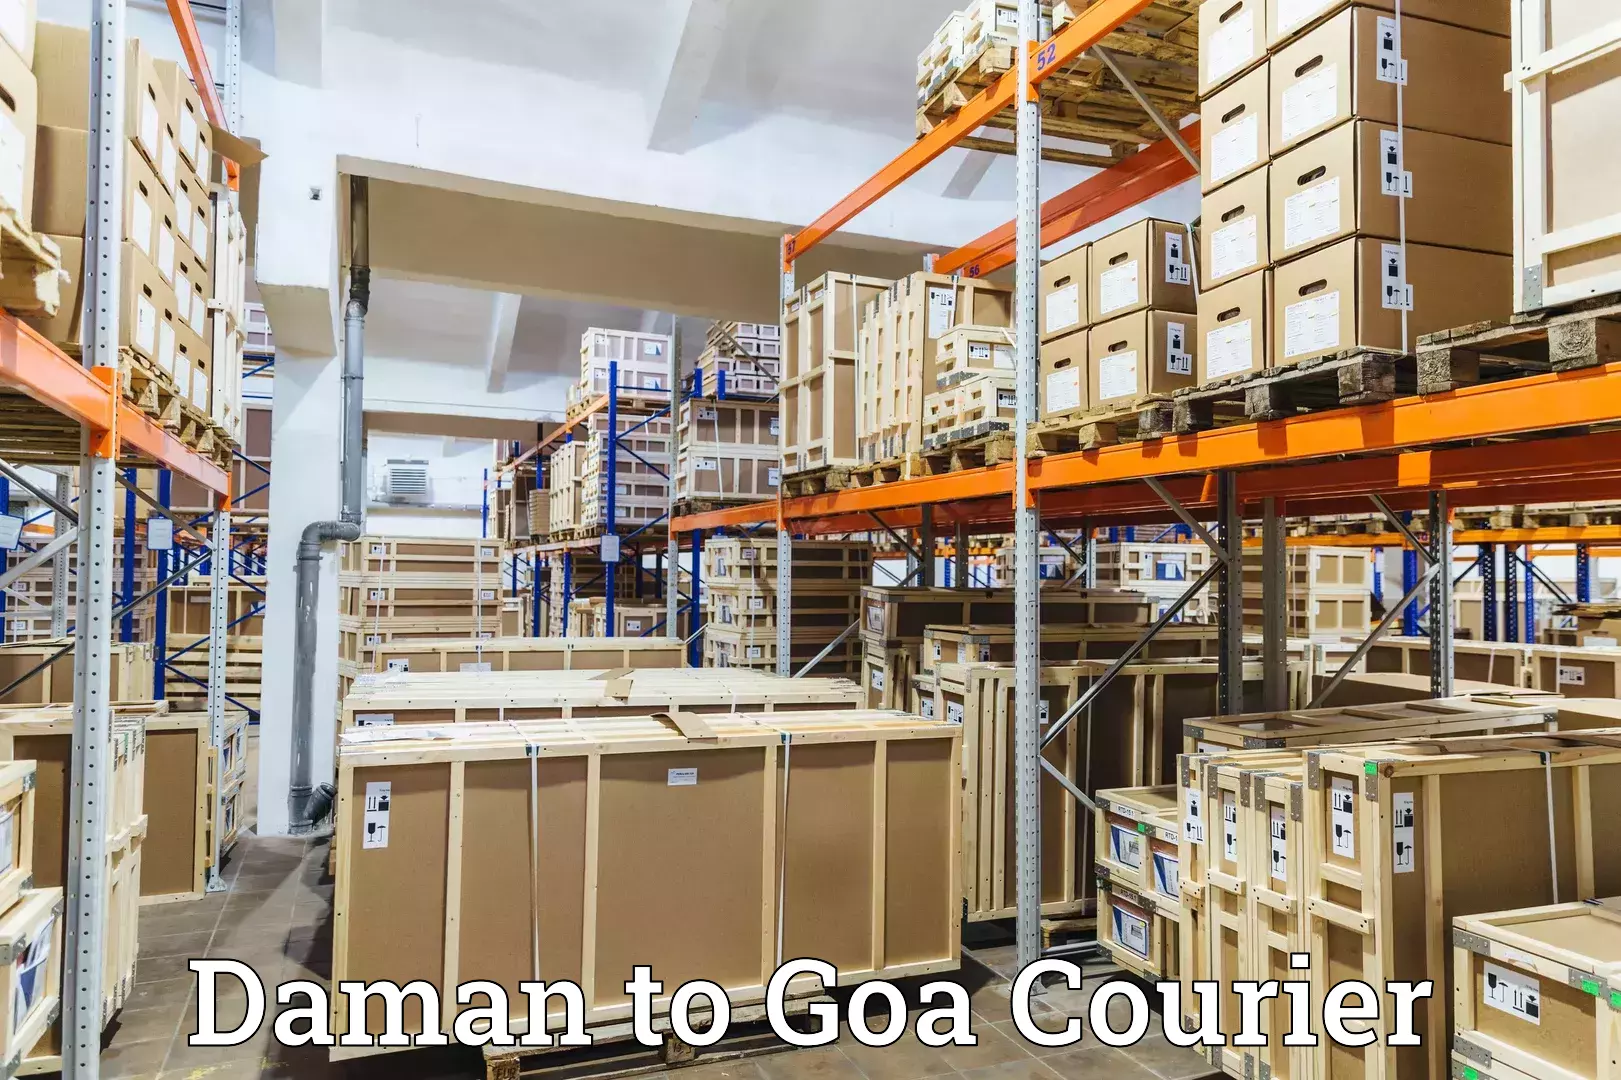 Digital courier platforms Daman to South Goa